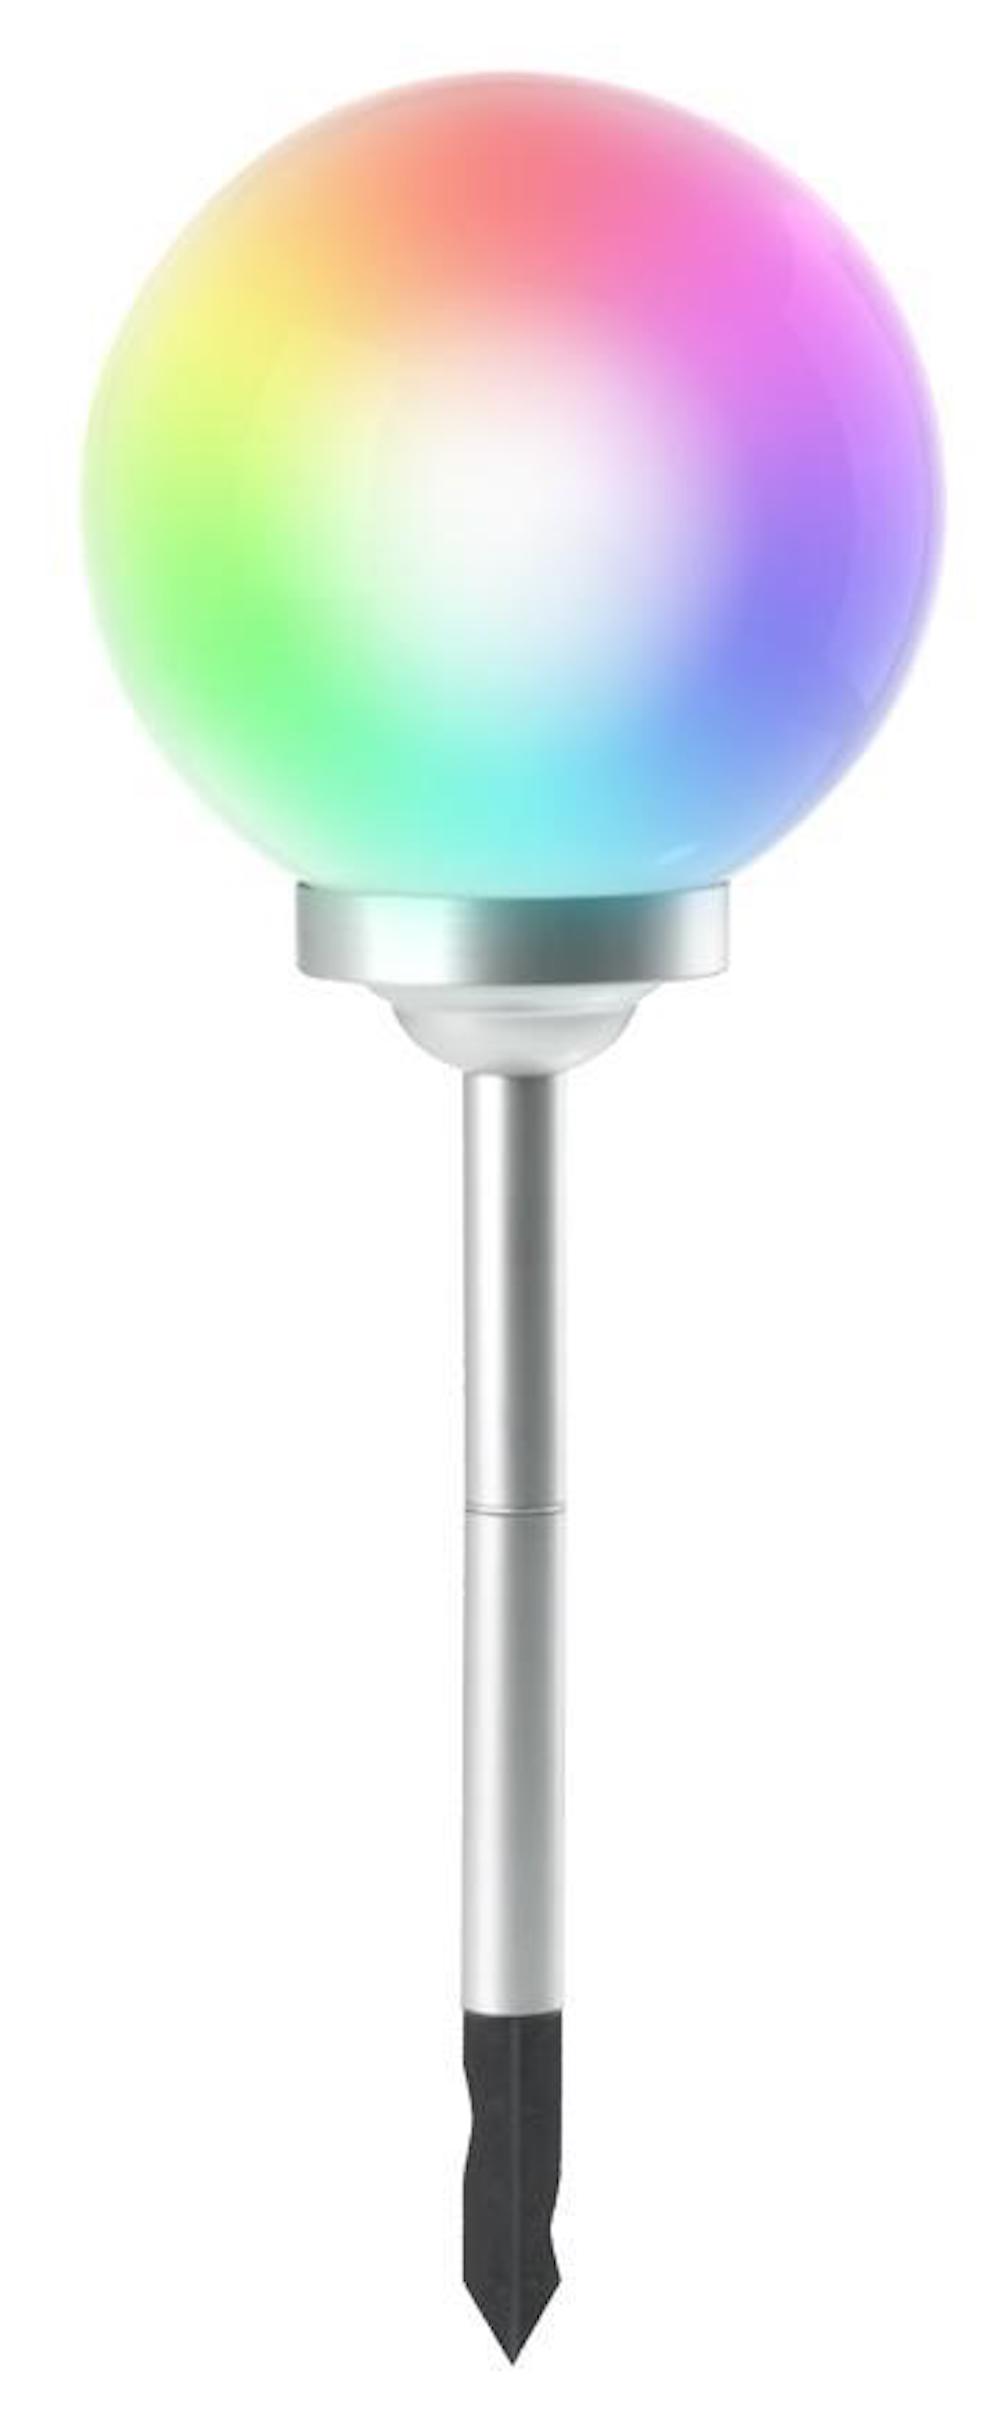 SuperSparSet 5x RAINBOW Solarlampe mit automatischer Einschaltfunktion | HxØ 73,5x30cm | 4-farbige LEDs | Automatisches Schalten | Gartenlampe, Rattanlampe, LED Lampe, Solarlampe